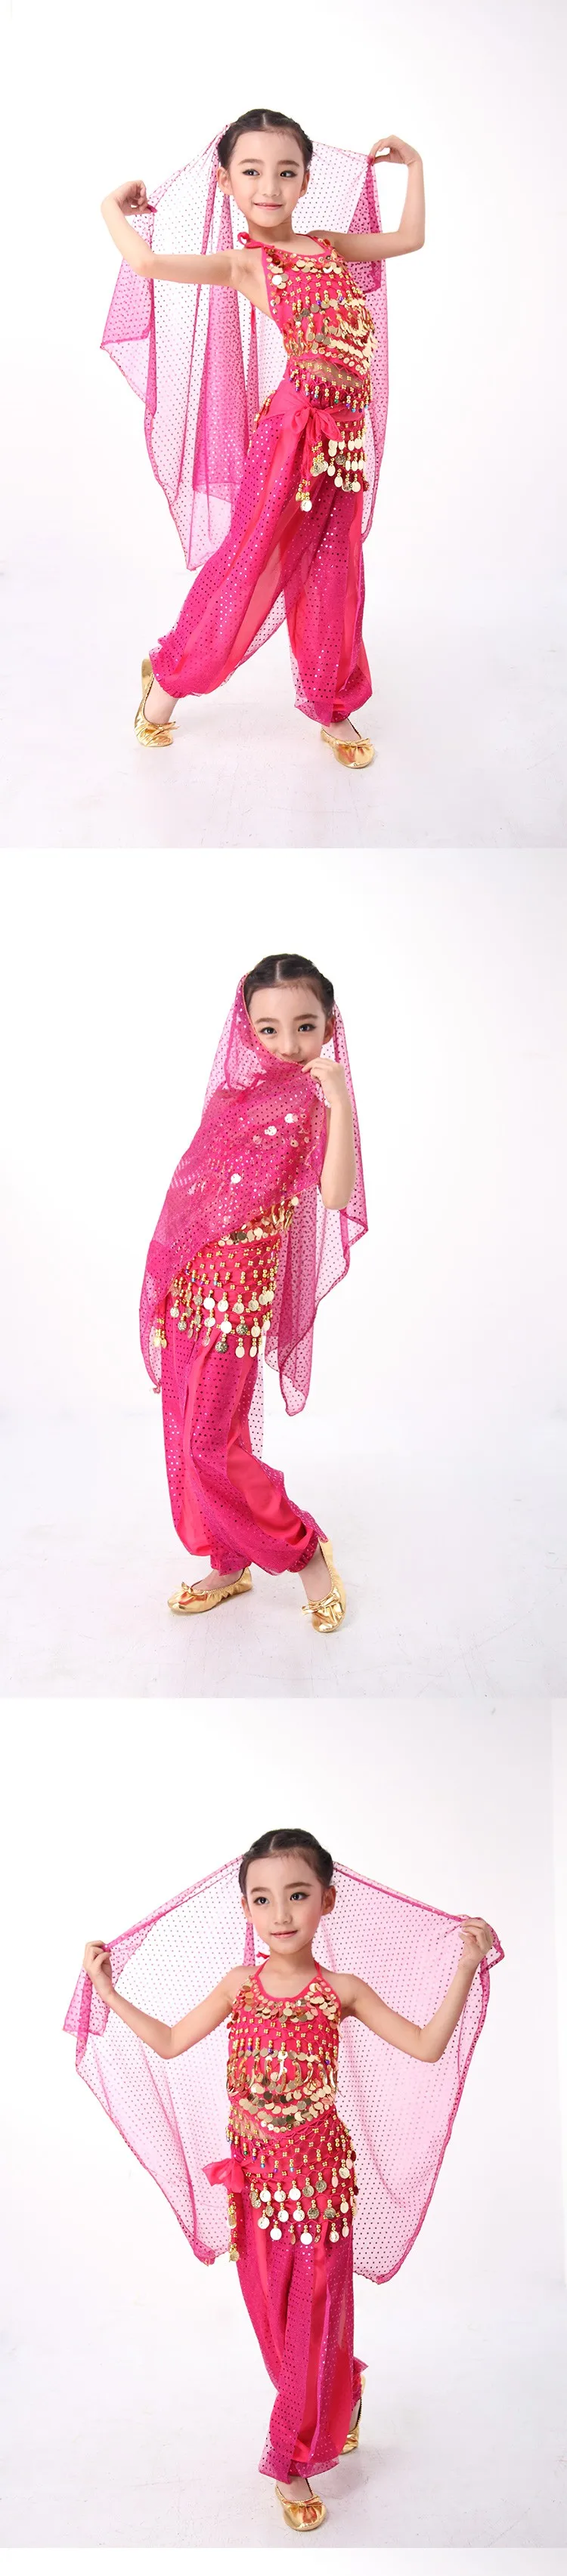 Костюм для танца живота, топ, штаны с шарфом, ручная работа, детский Болливуд, индийский костюм для танца живота, женская одежда, 3 цвета